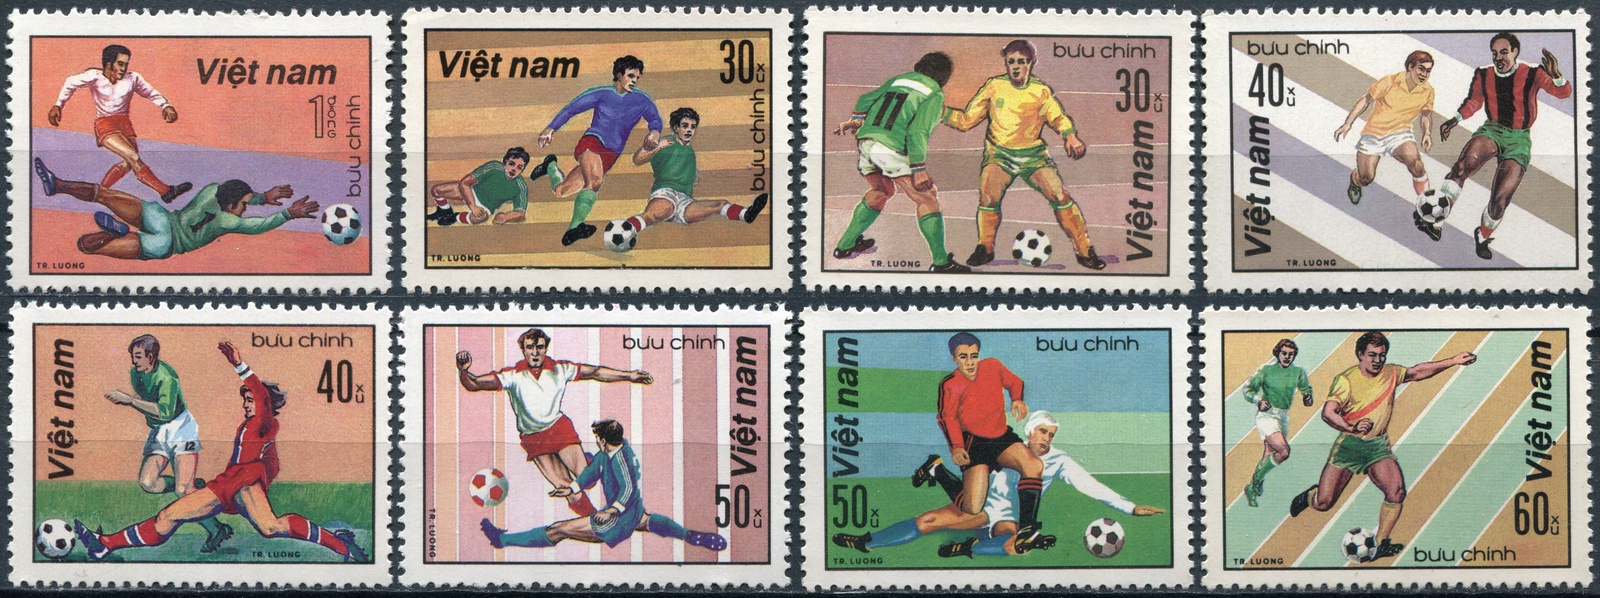 почтовые марки вьетнама